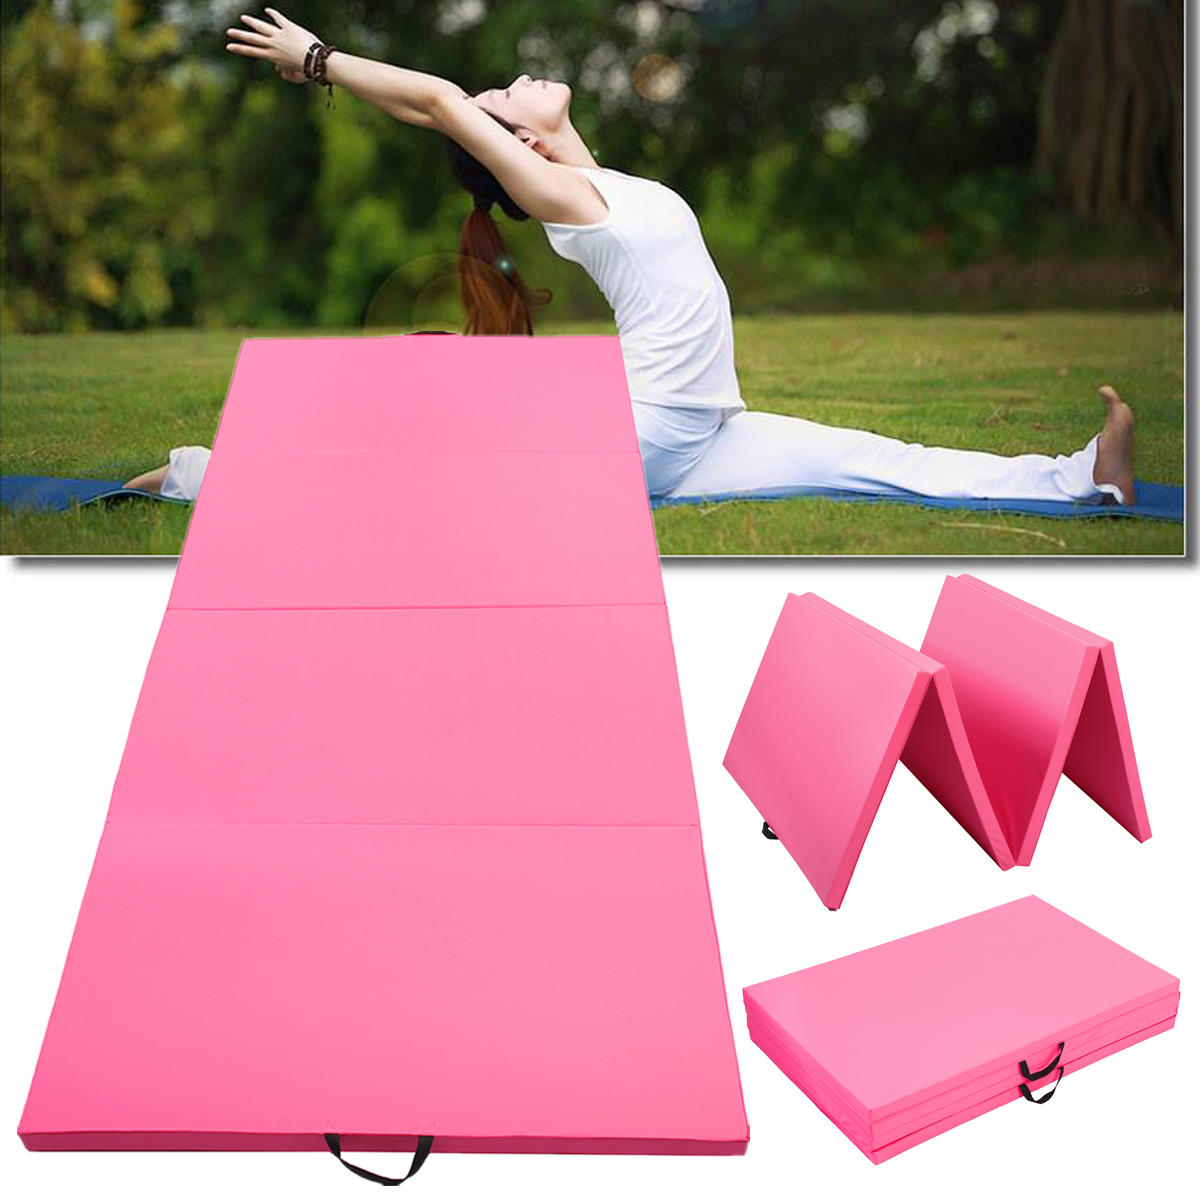 4-vrstvová super veľká skladacia gymnastická podložka pre jógu a cvičenie v posilňovni ružovej farby, rozmery: 300x120x5 cm